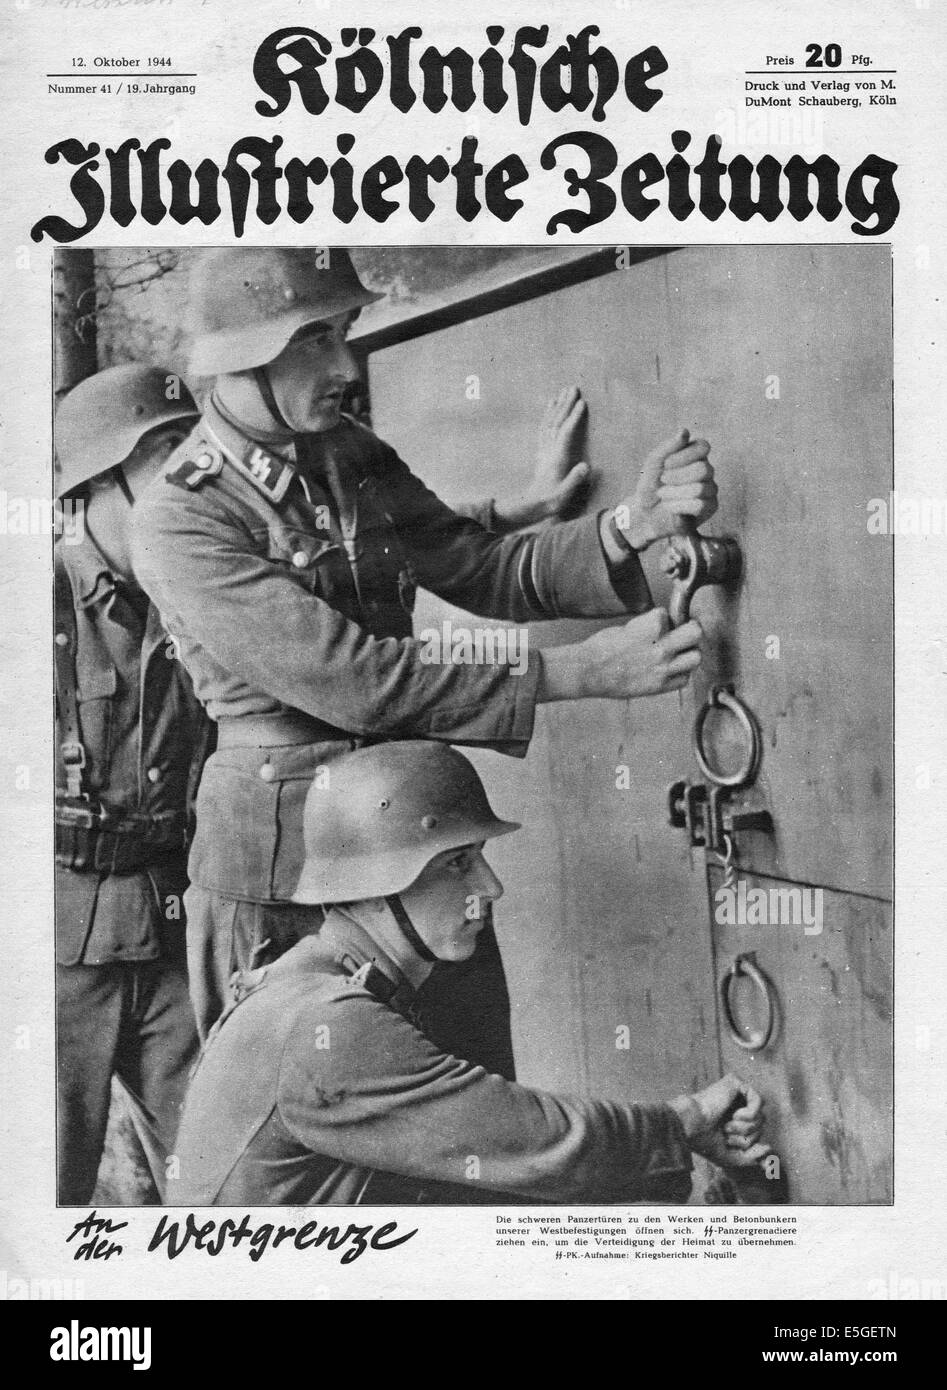 1944 Kolnischer Illustrierte Zeitung front page showing Waffen SS soldiers Stock Photo